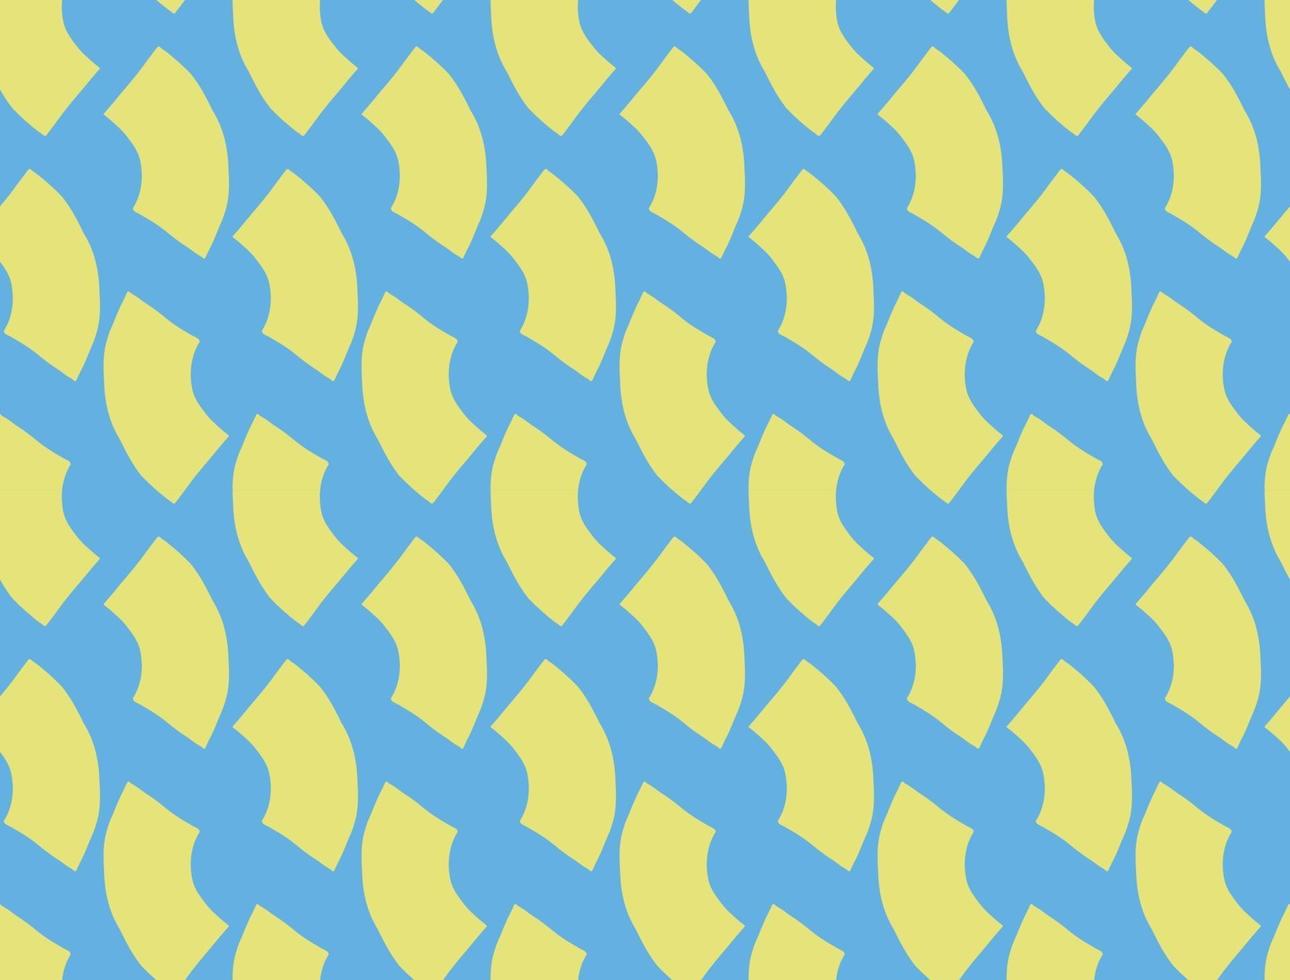 Vektor Textur Hintergrund, nahtloses Muster. handgezeichnete, blaue, gelbe Farben.